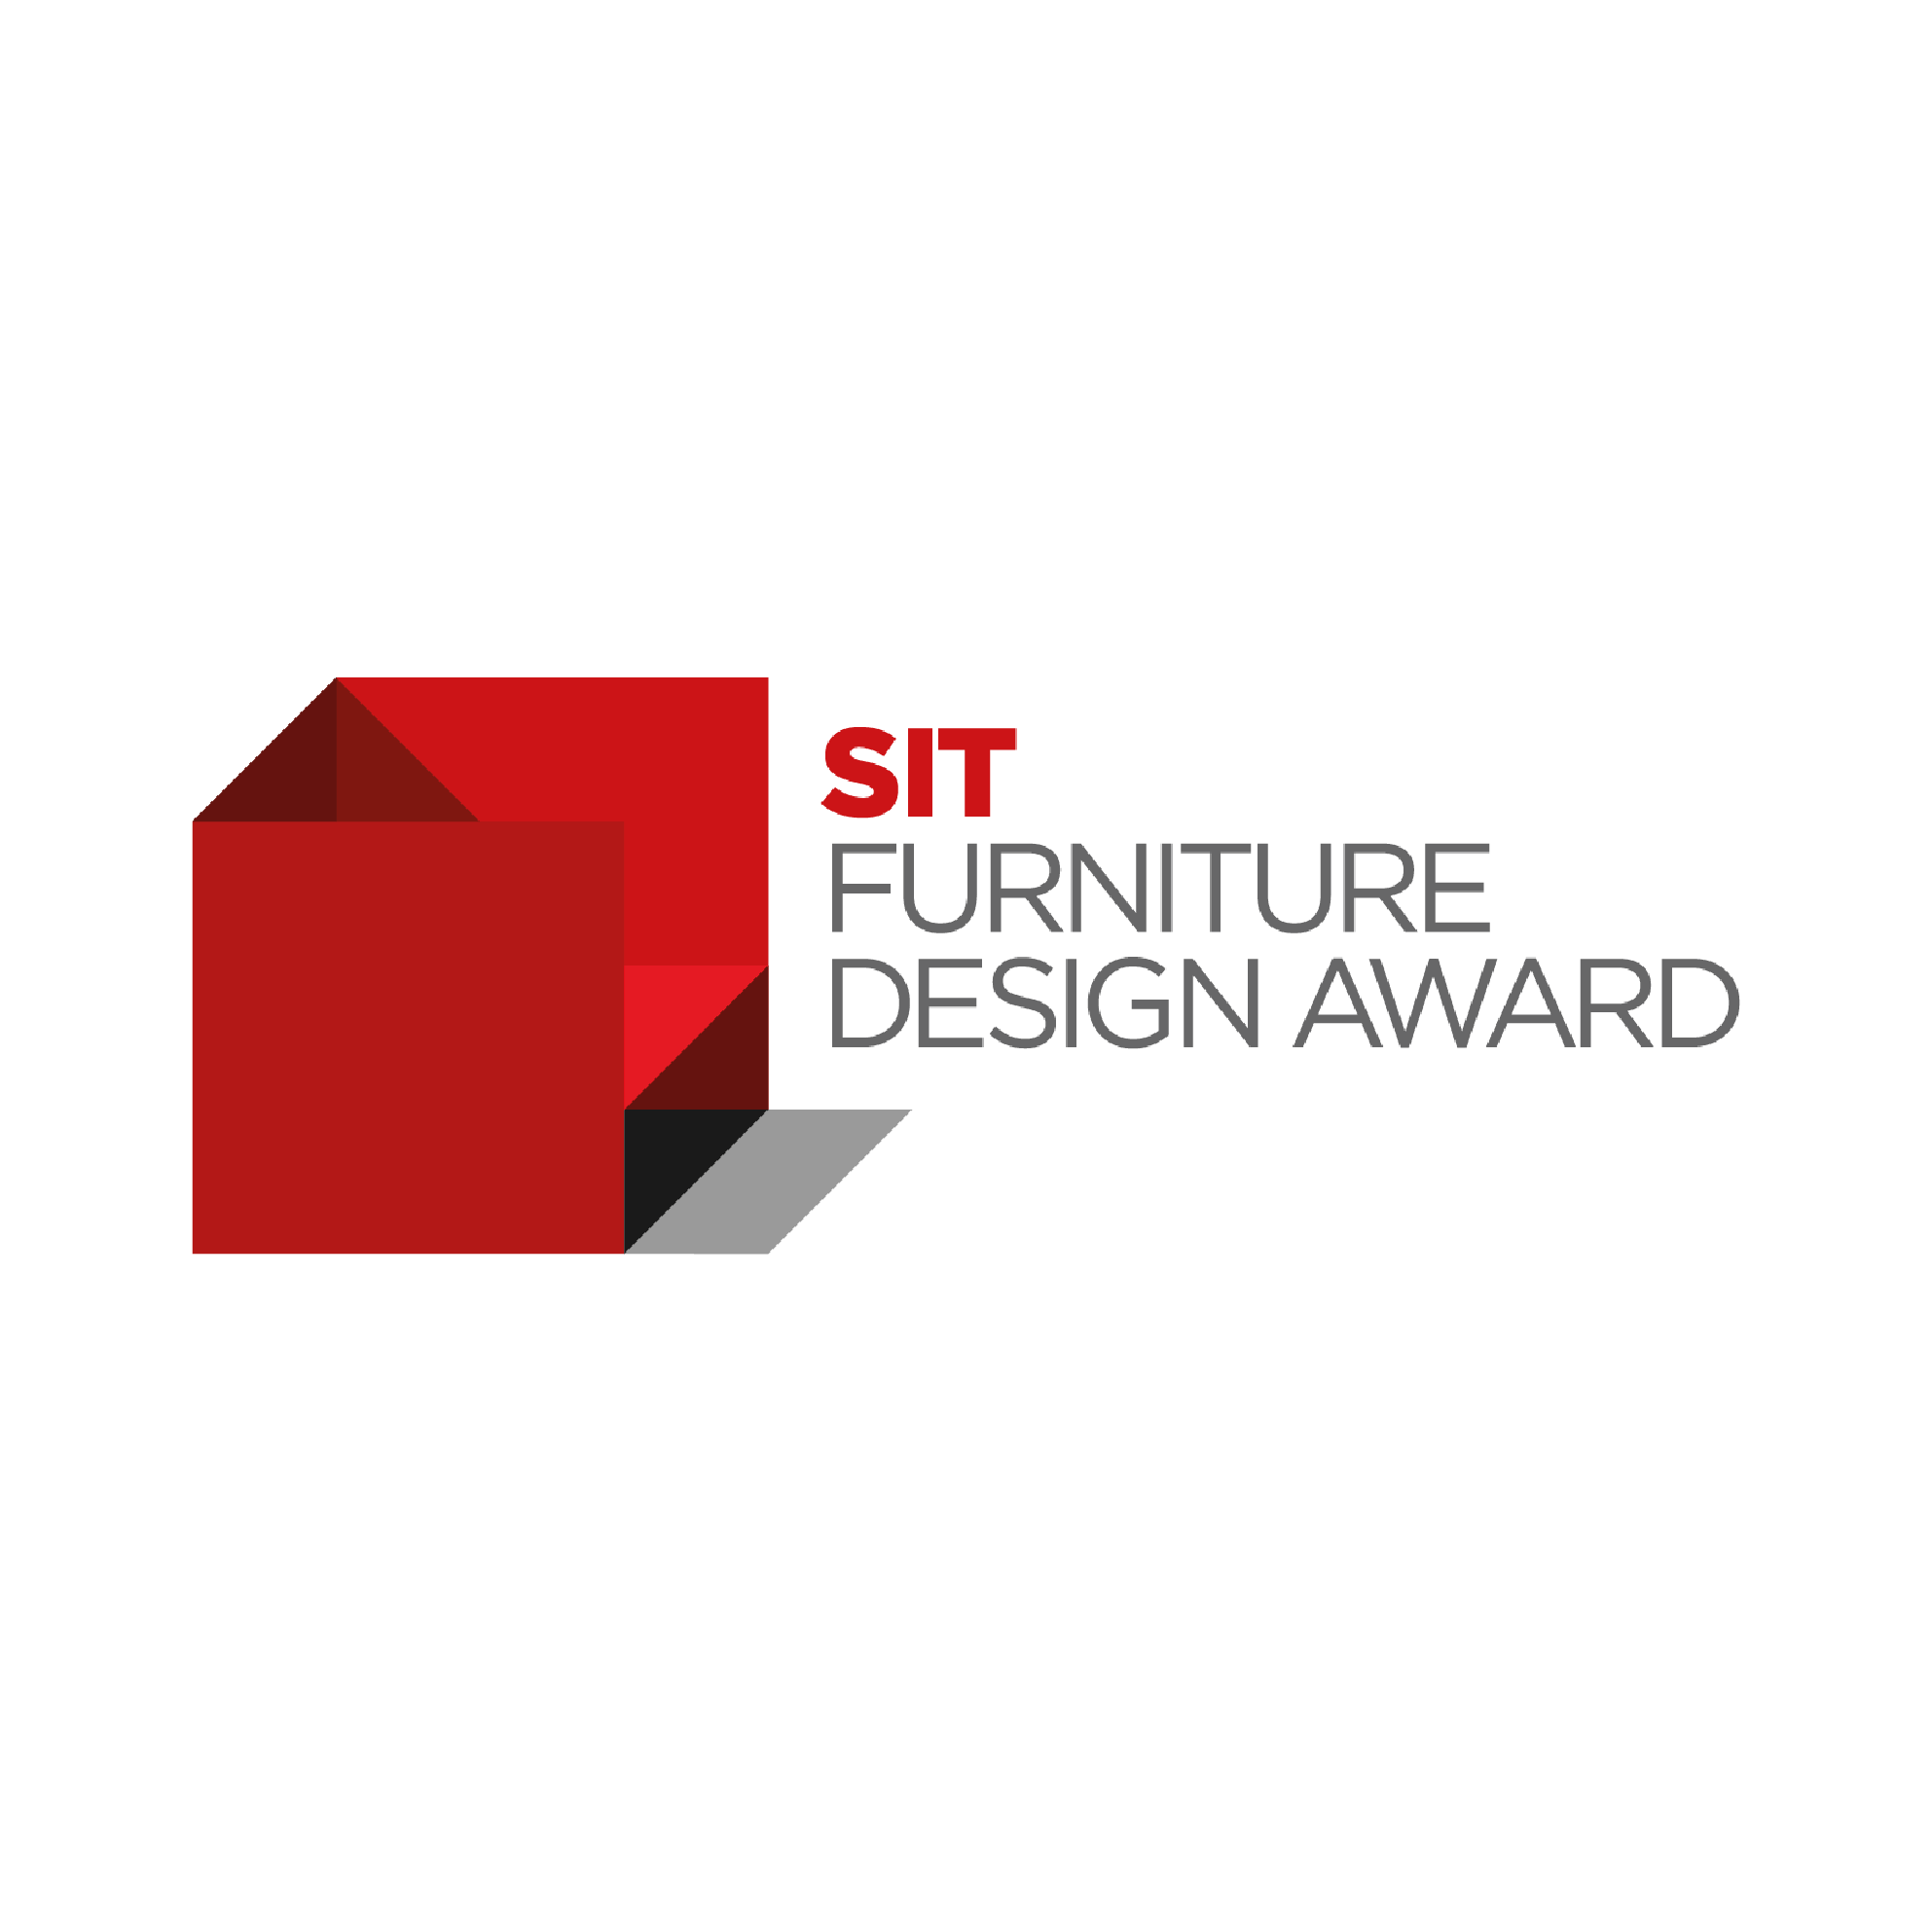 SIT Furniture Design Awards